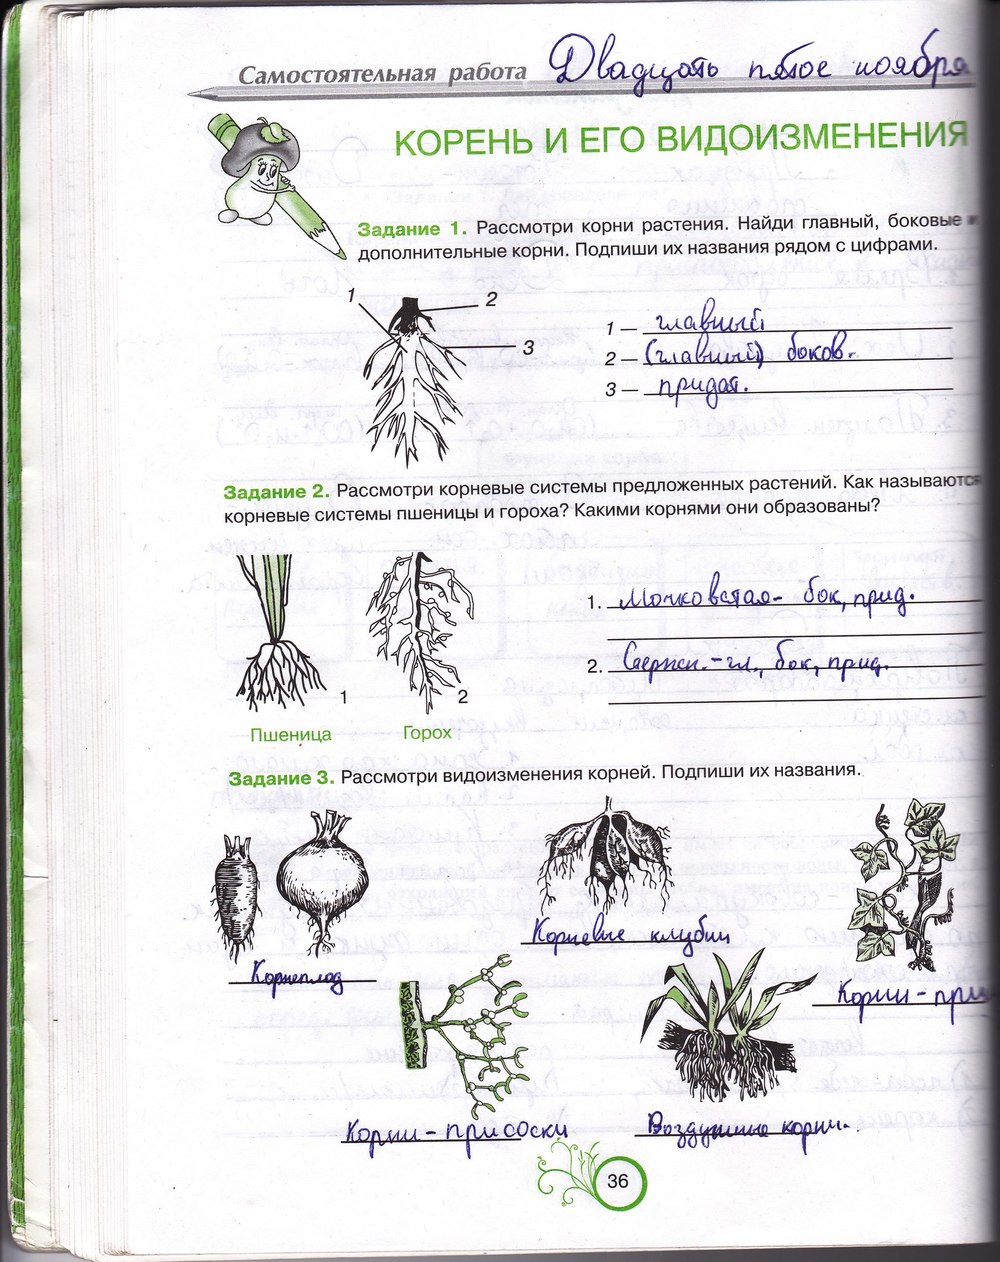 Робочий зошит з біології 6 клас відповіді. Рабочая тетрадь по биологии 6 класс О.А. Андерсон Страница 36